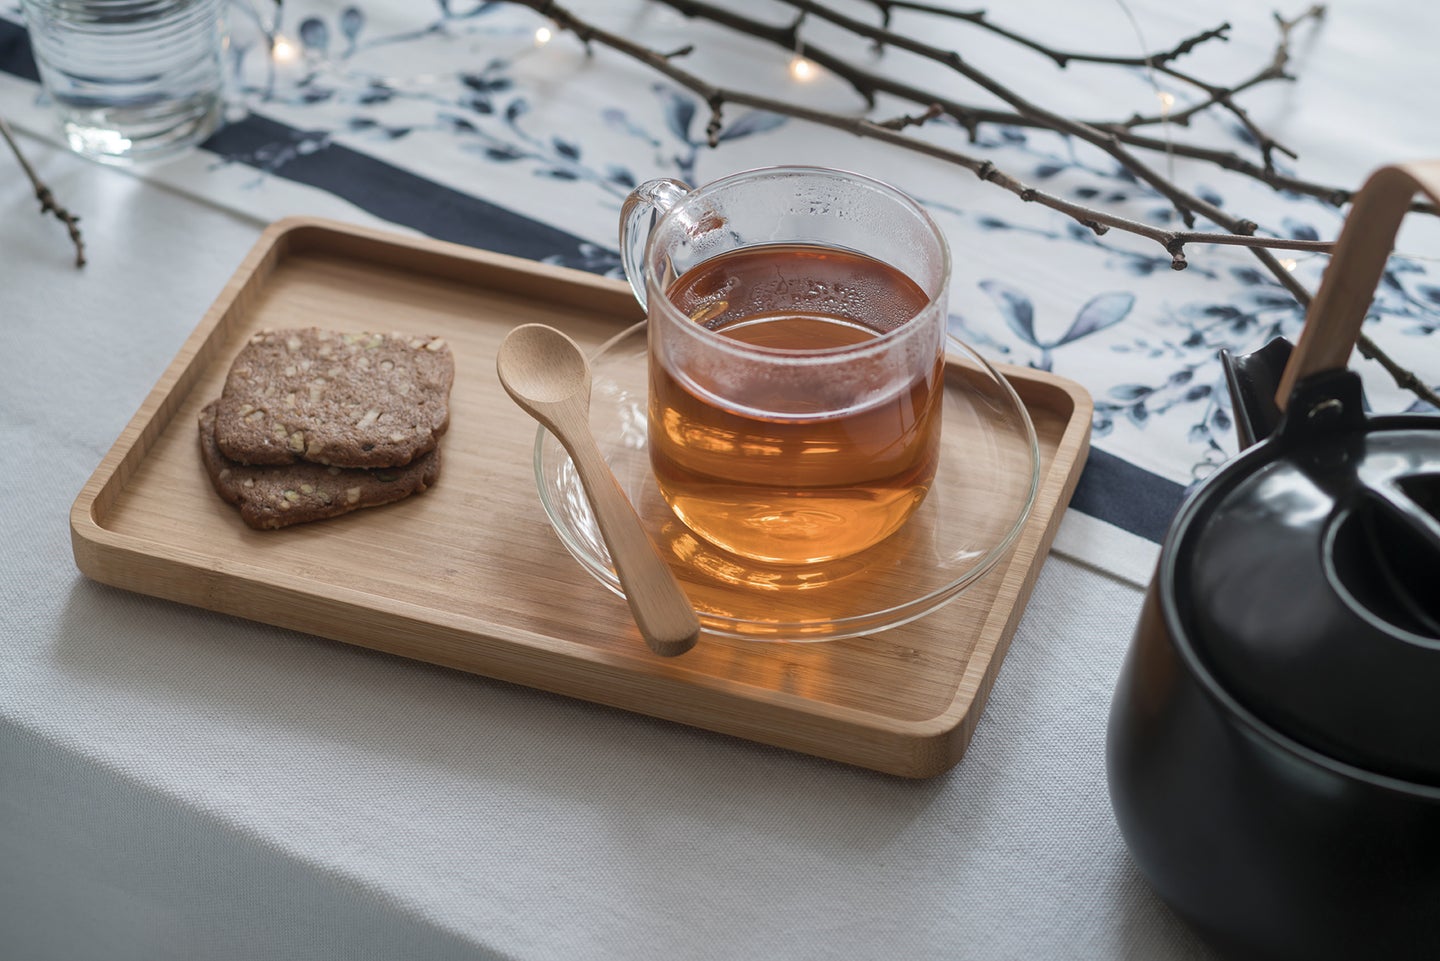 竹托盘照片,一杯茶。旁边有一个竹茶匙茶杯,茶壶是只是在盘子的旁边。